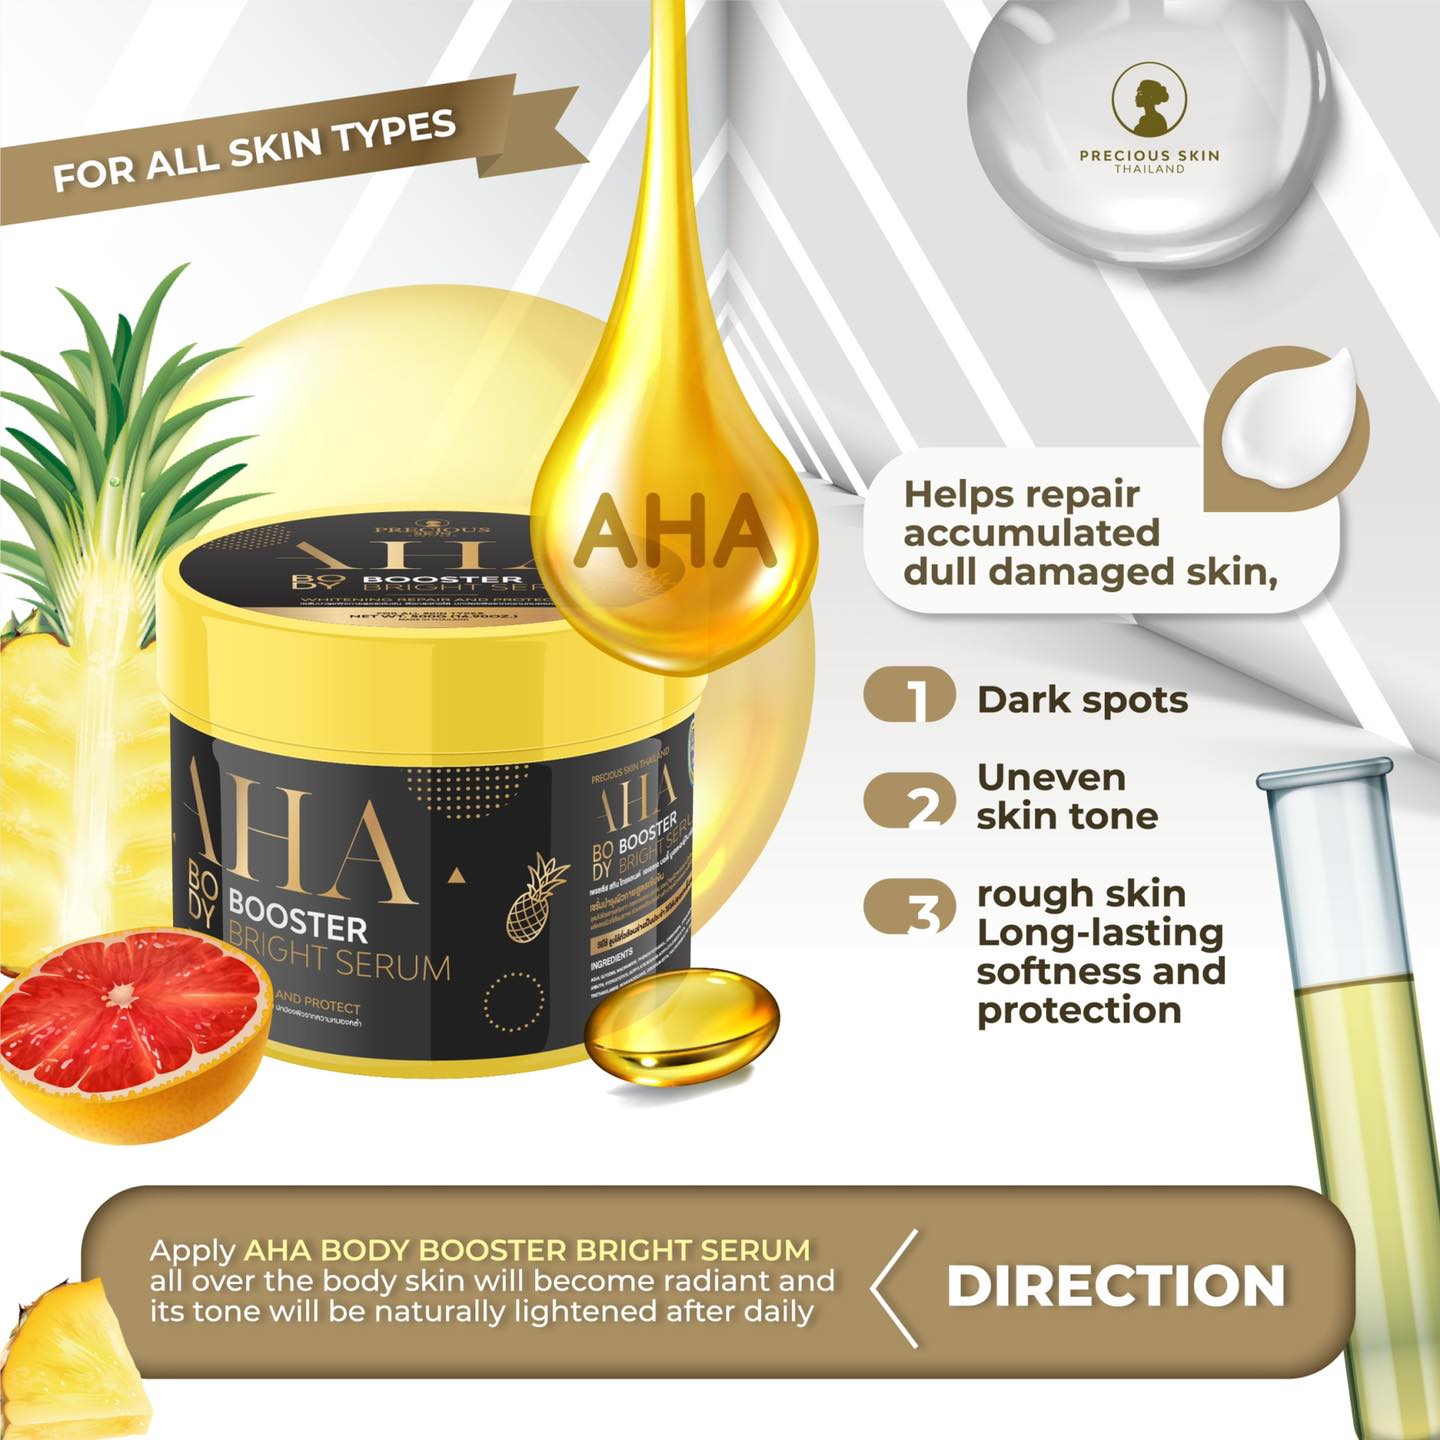 Precious Skin Thailand AHA Body Booster Bright Serum, 500 ml